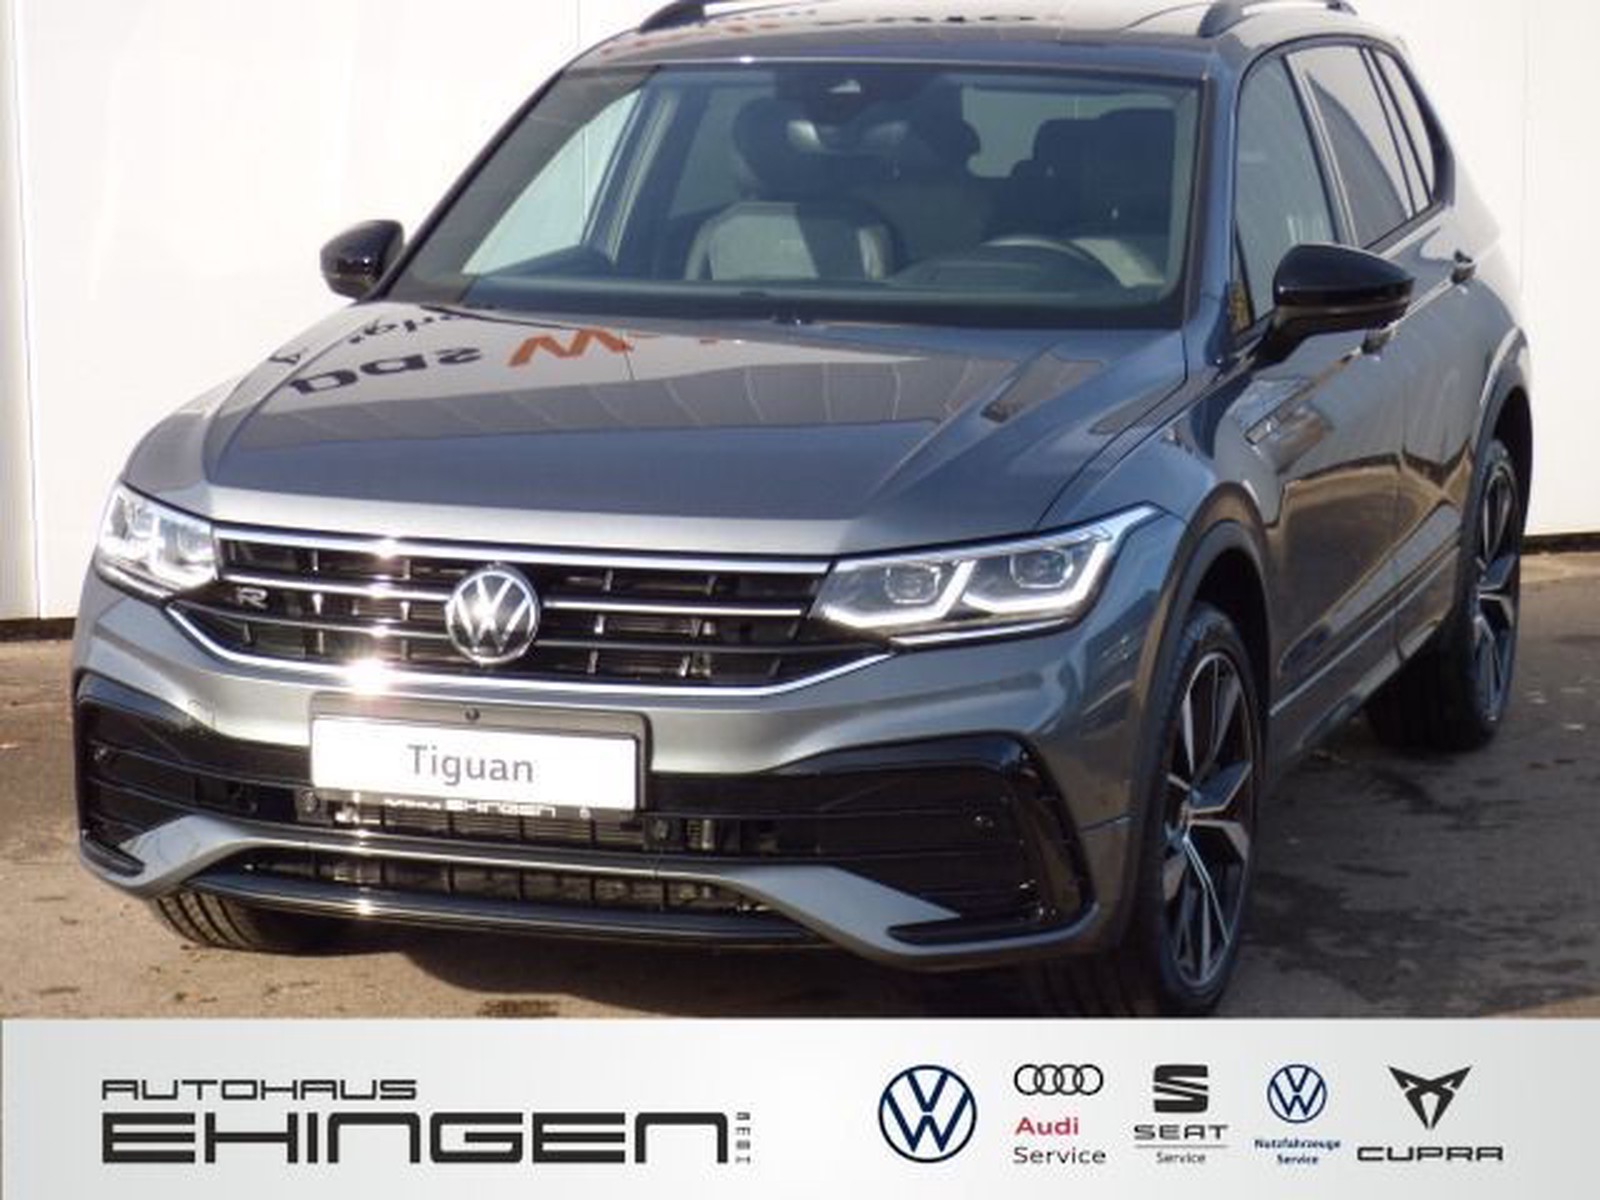 Volkswagen Tiguan Allspace R-Line 2,0 l TDI SCR 4MOTION 147 kW (200 PS)  7-Gang-Doppelkupplungsgetriebe DSG neu kaufen in Ehingen Preis 65185 eur -  Int.Nr.: NTW948 VERKAUFT